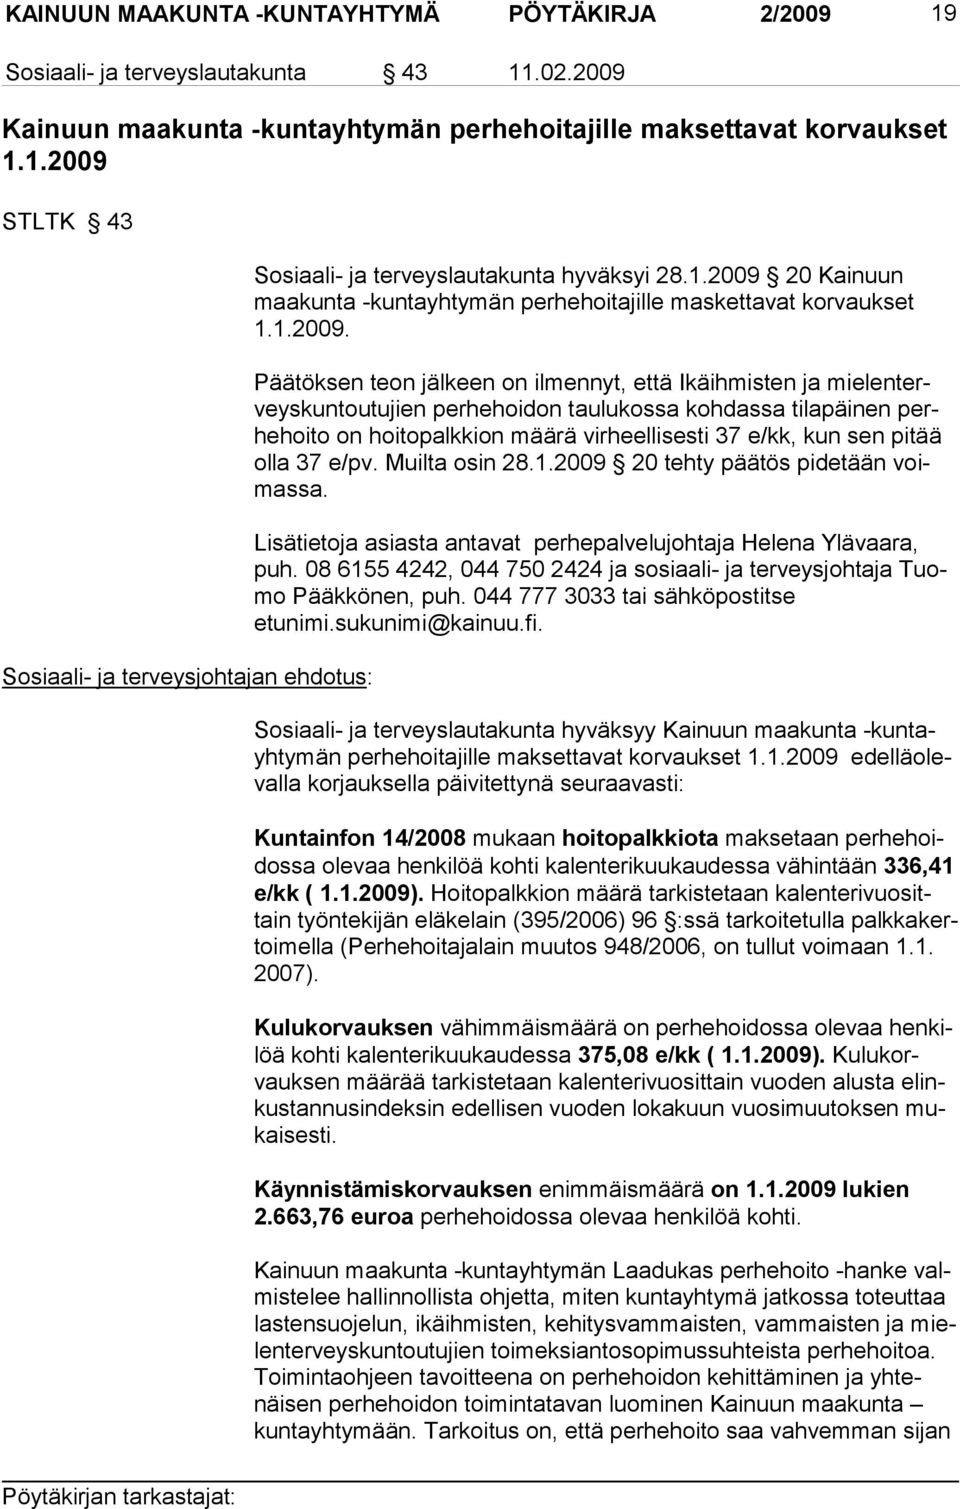 20 Kainuun maakunta -kunta yhtymän perhehoitajille maskettavat kor vaukset 1.1.2009.